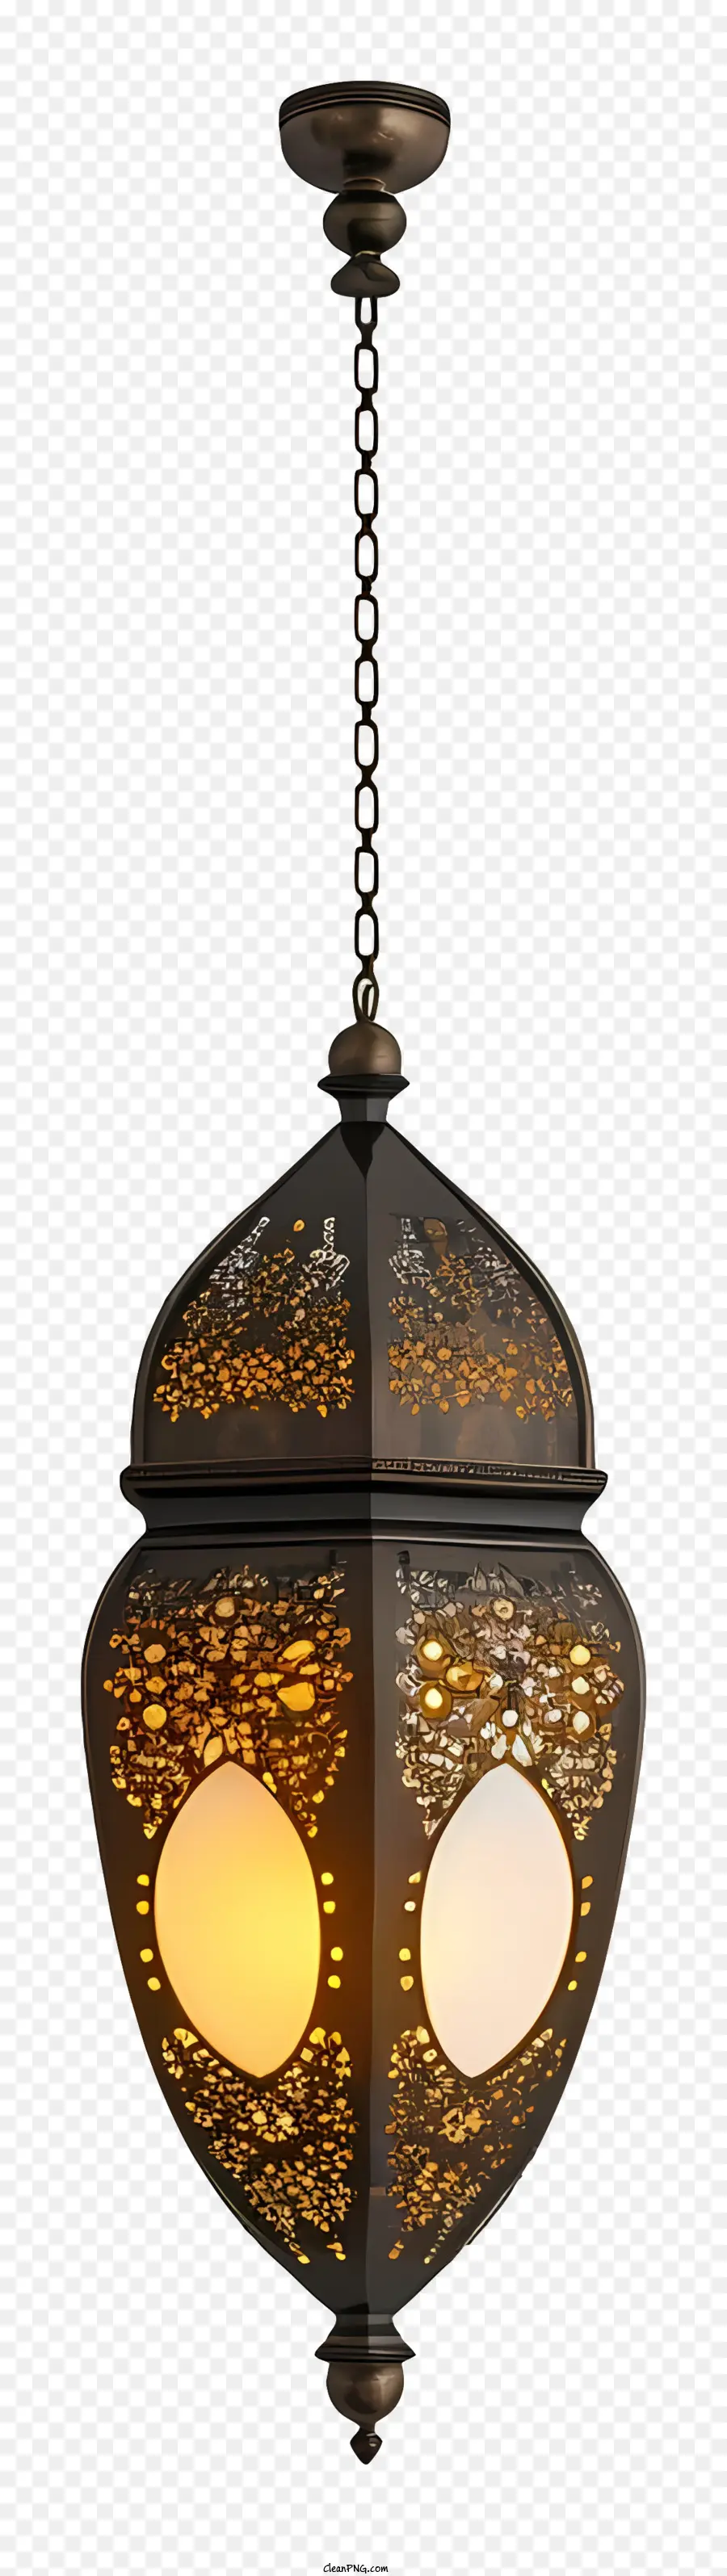 islamische Lampe - Antiker Kronleuchter mit kompliziertem Design, an der Decke aufgehängt